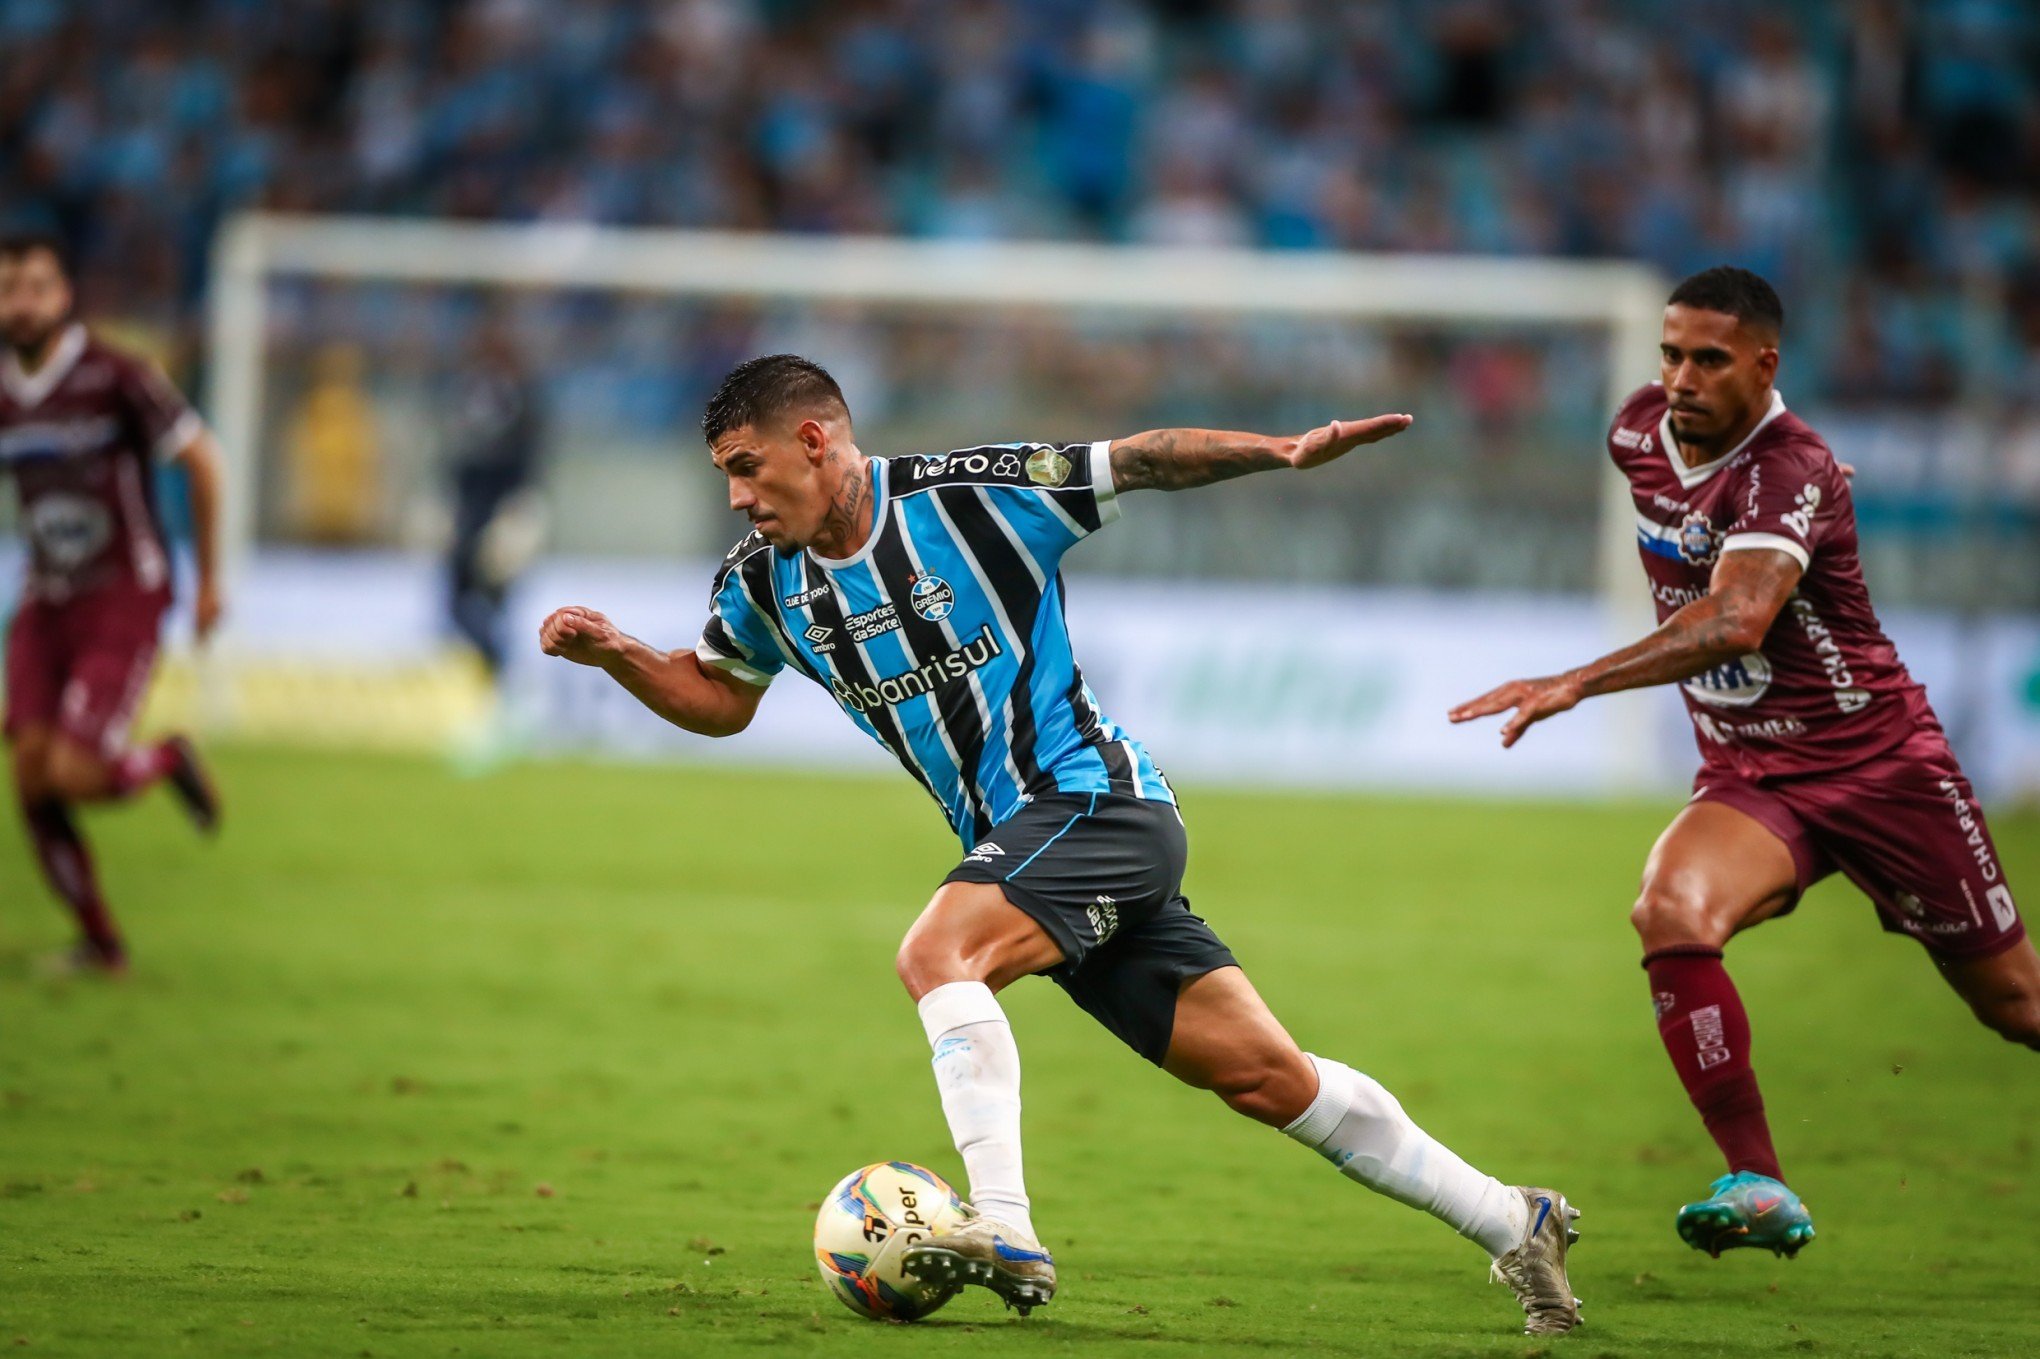 Mayk, lateral do Grêmio, se desculpa por expulsão no primeiro tempo: "Excesso de vontade"